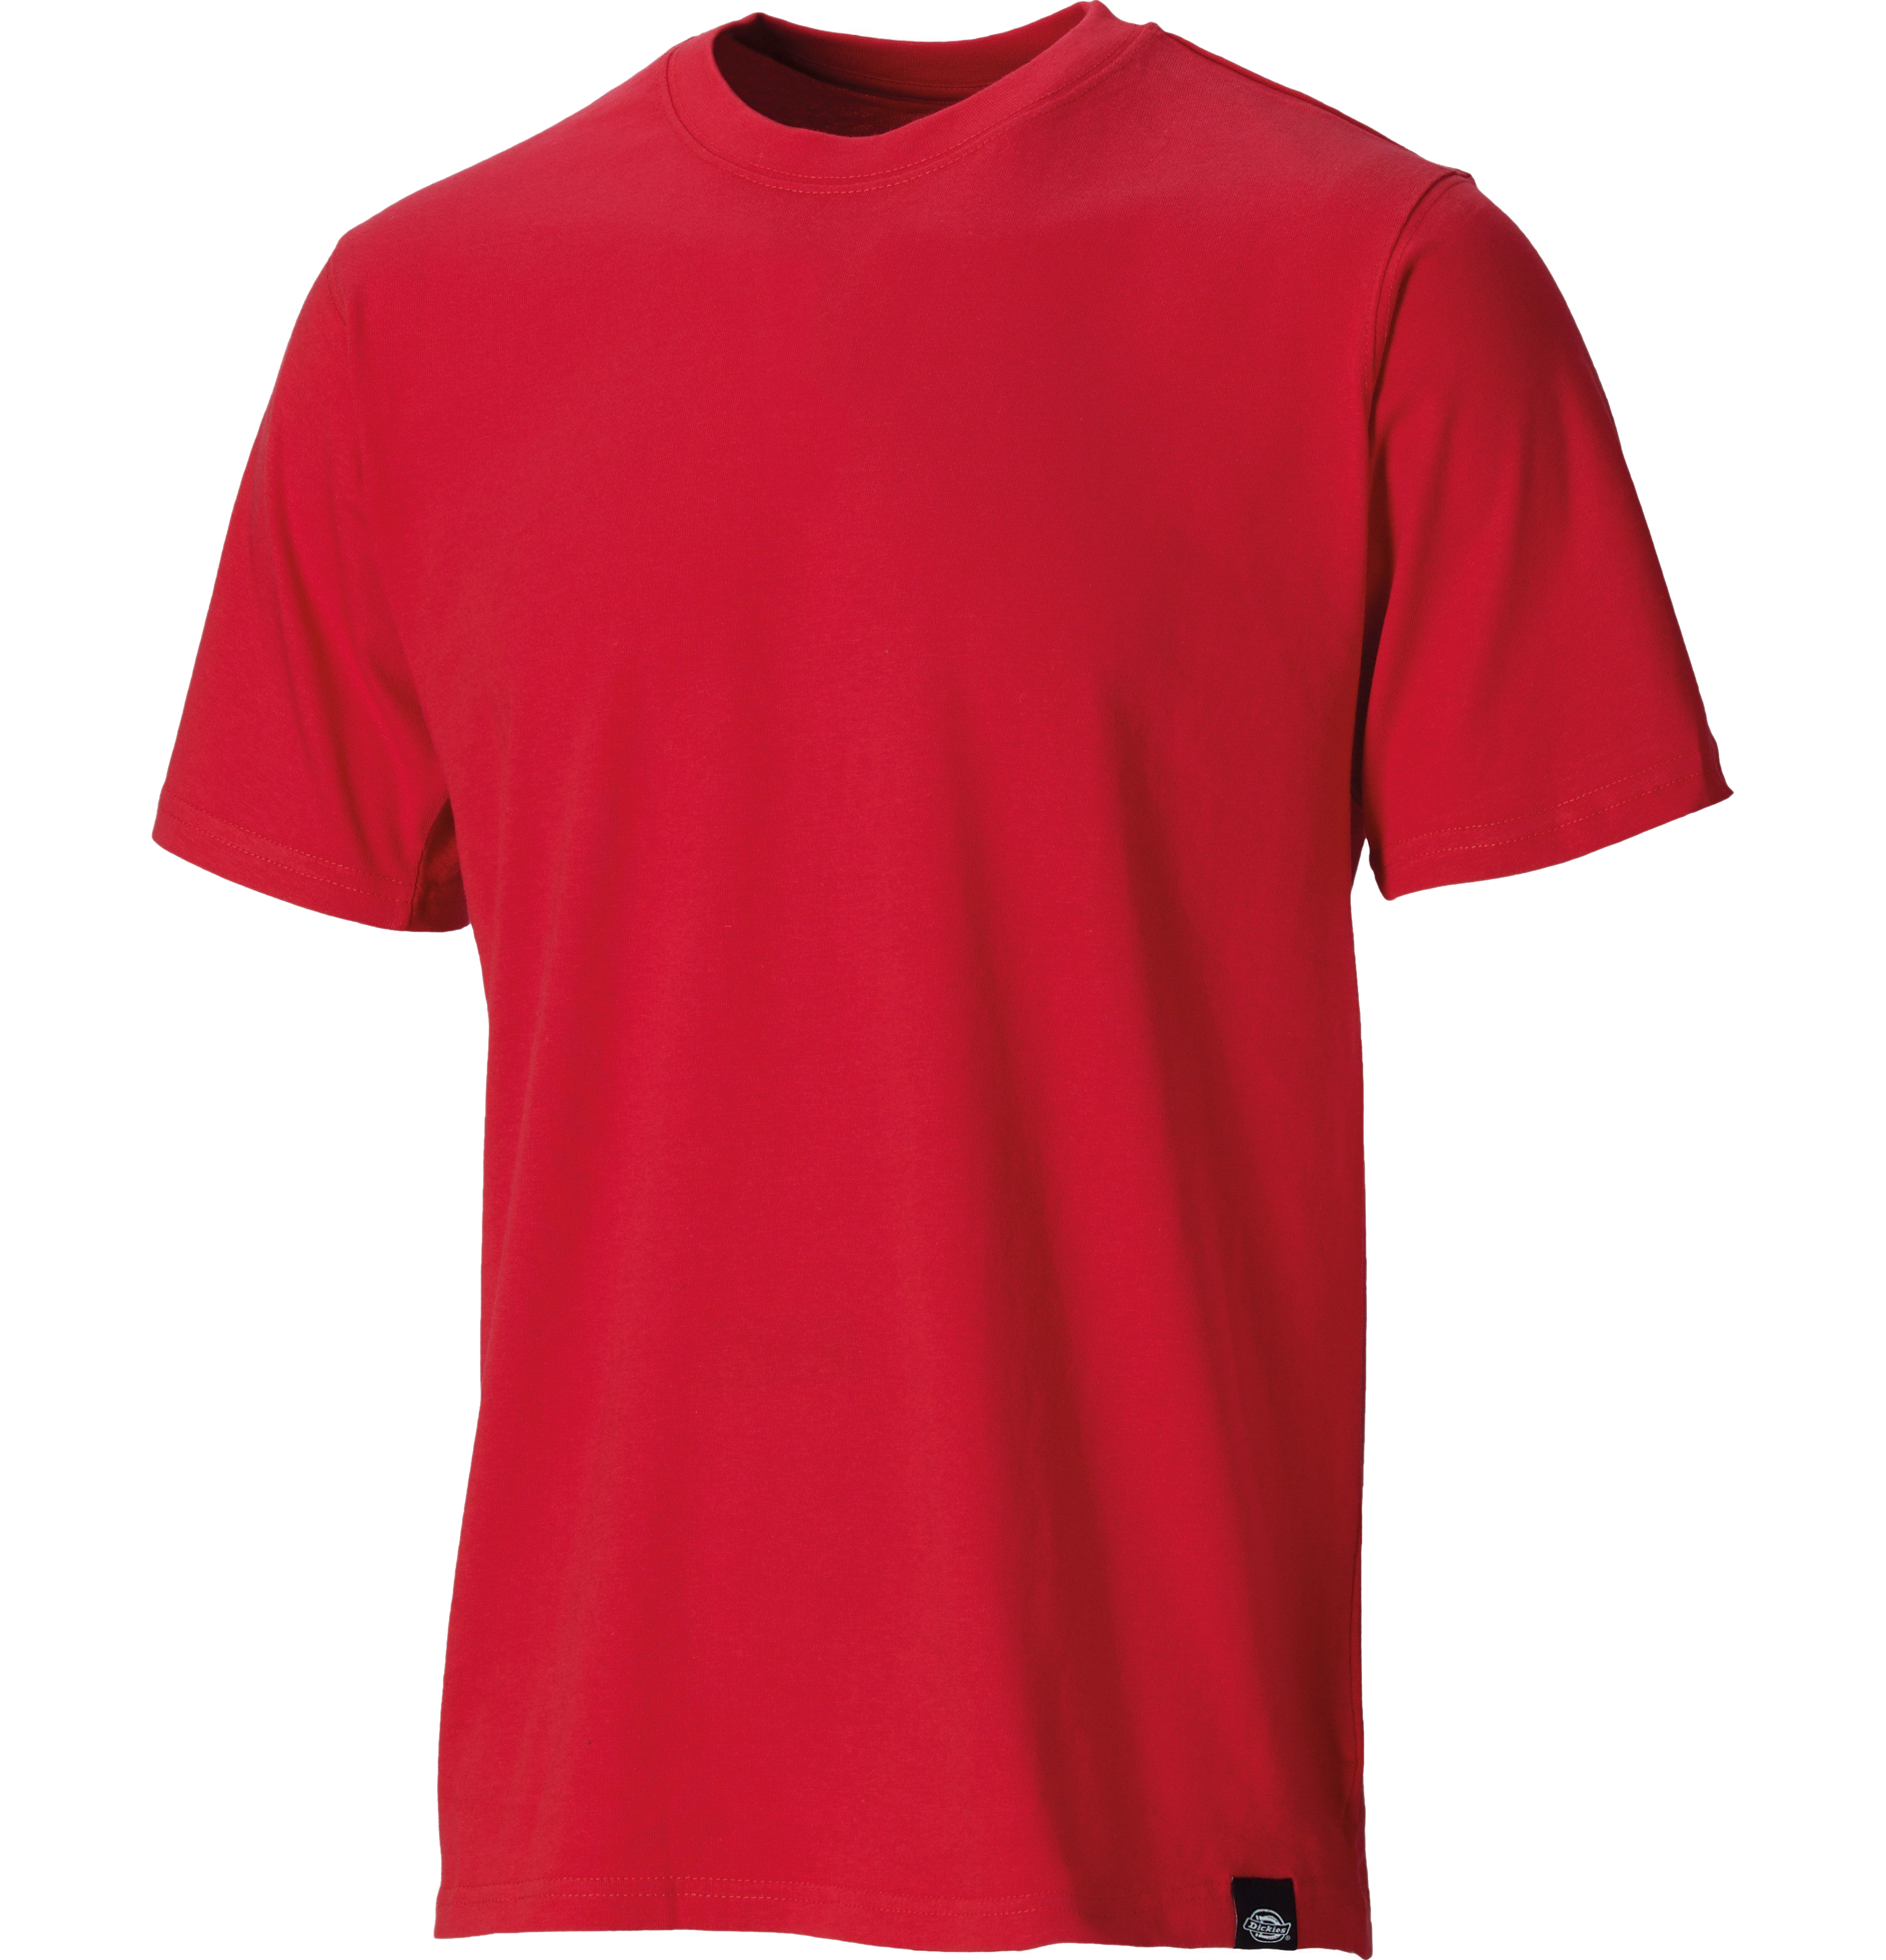 Простая красная футболка PNG фоновое изображение